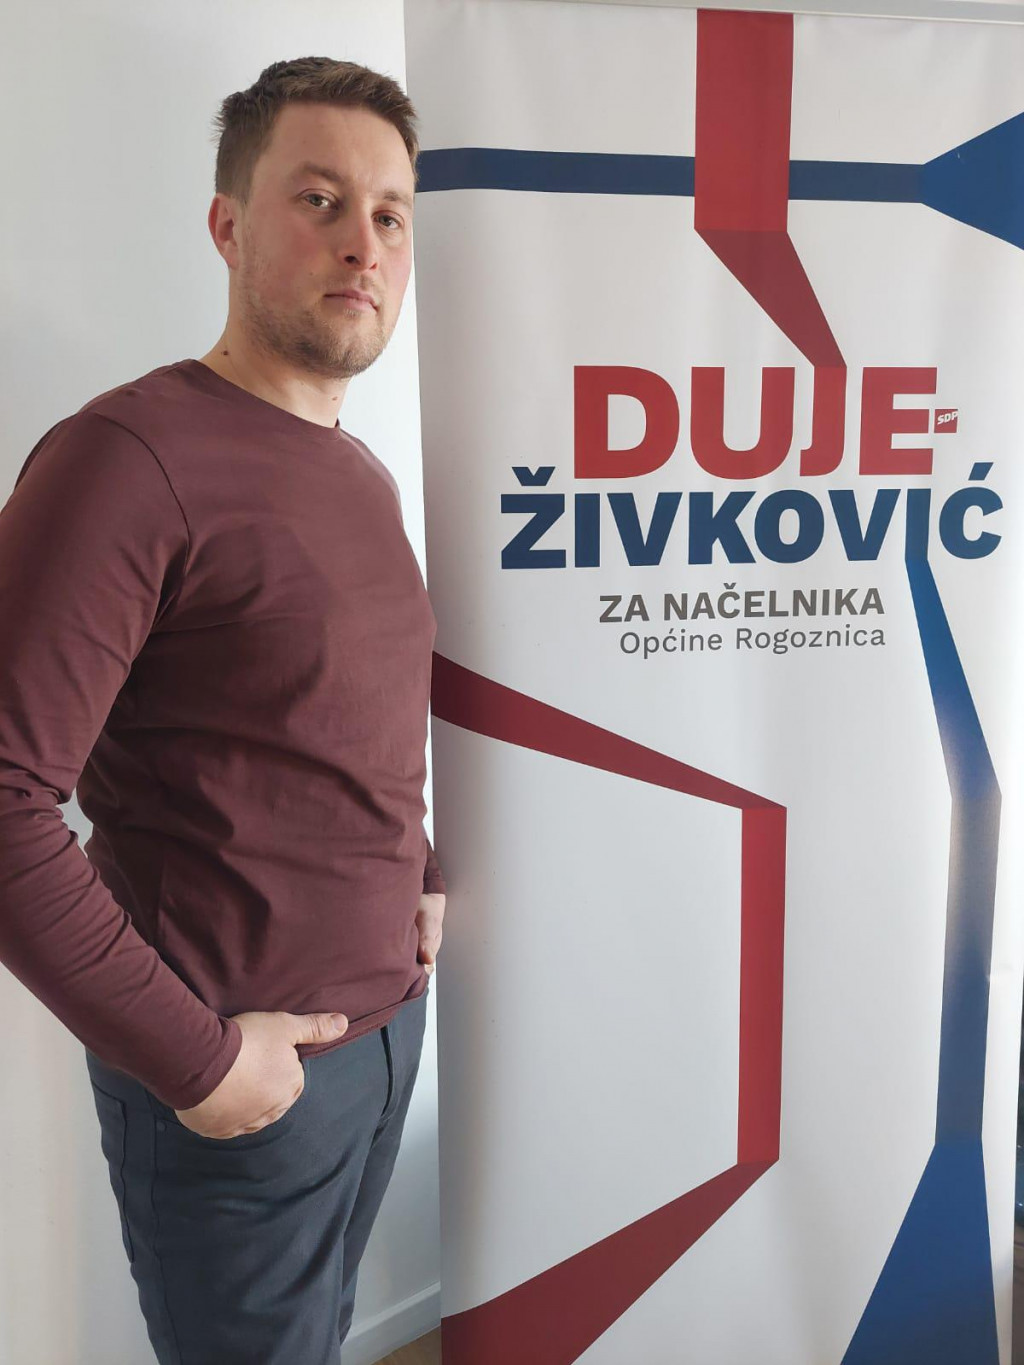 Duje Živković, nestranački je kandidat za načelnika Rogoznice